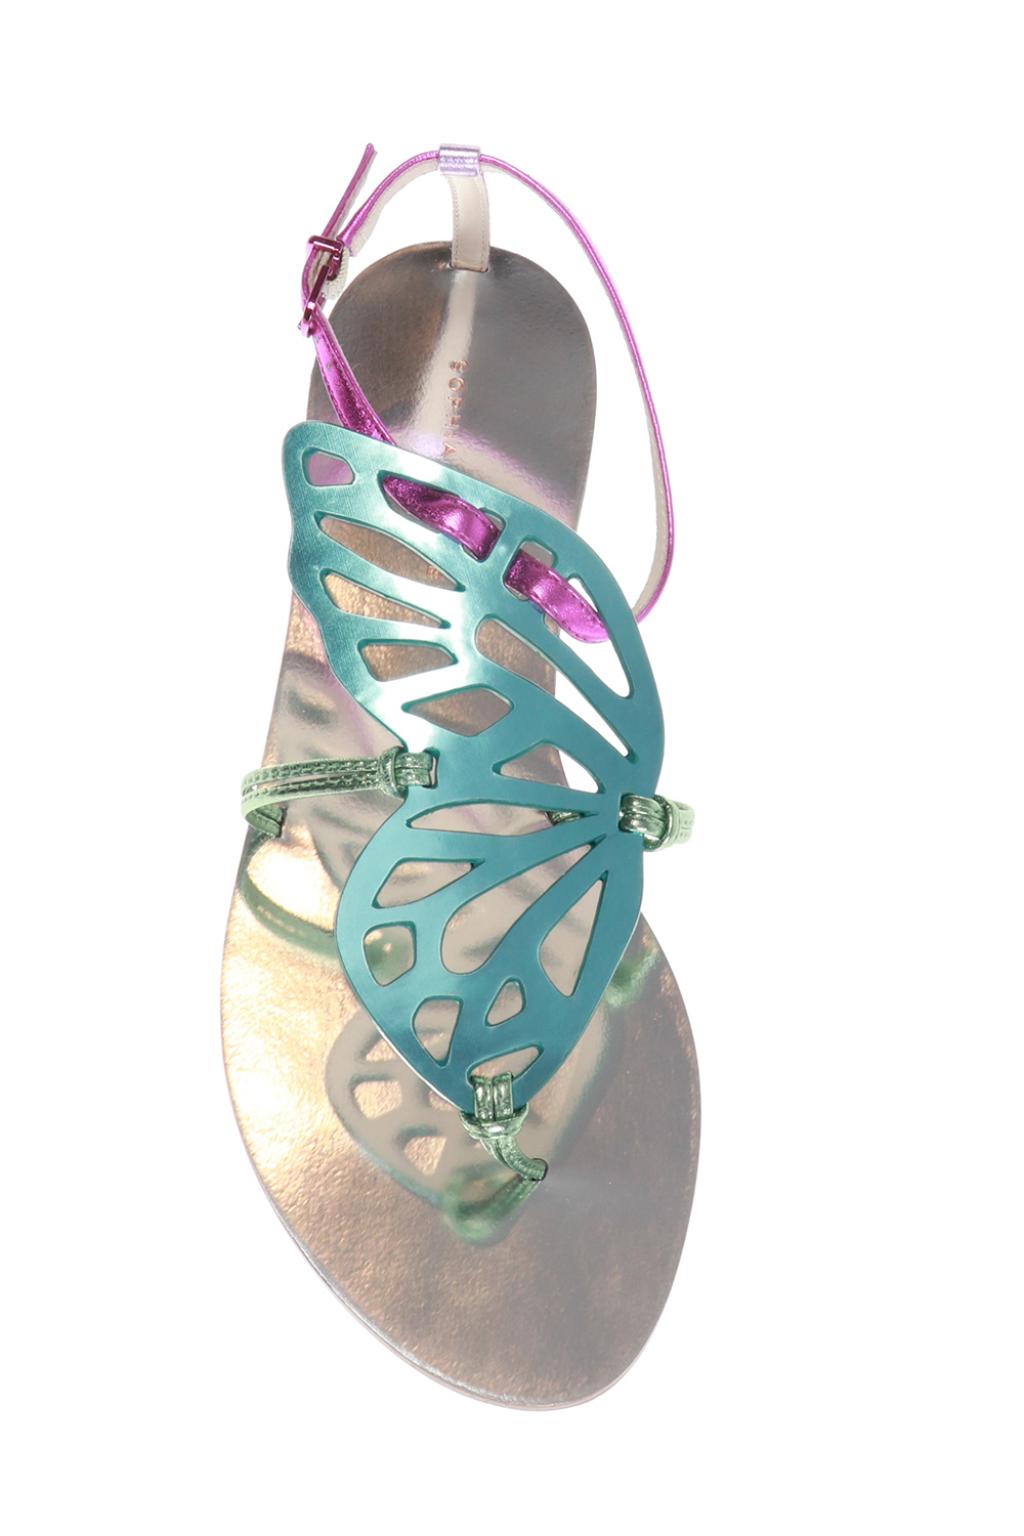 sophia webster bibi butterfly sandals